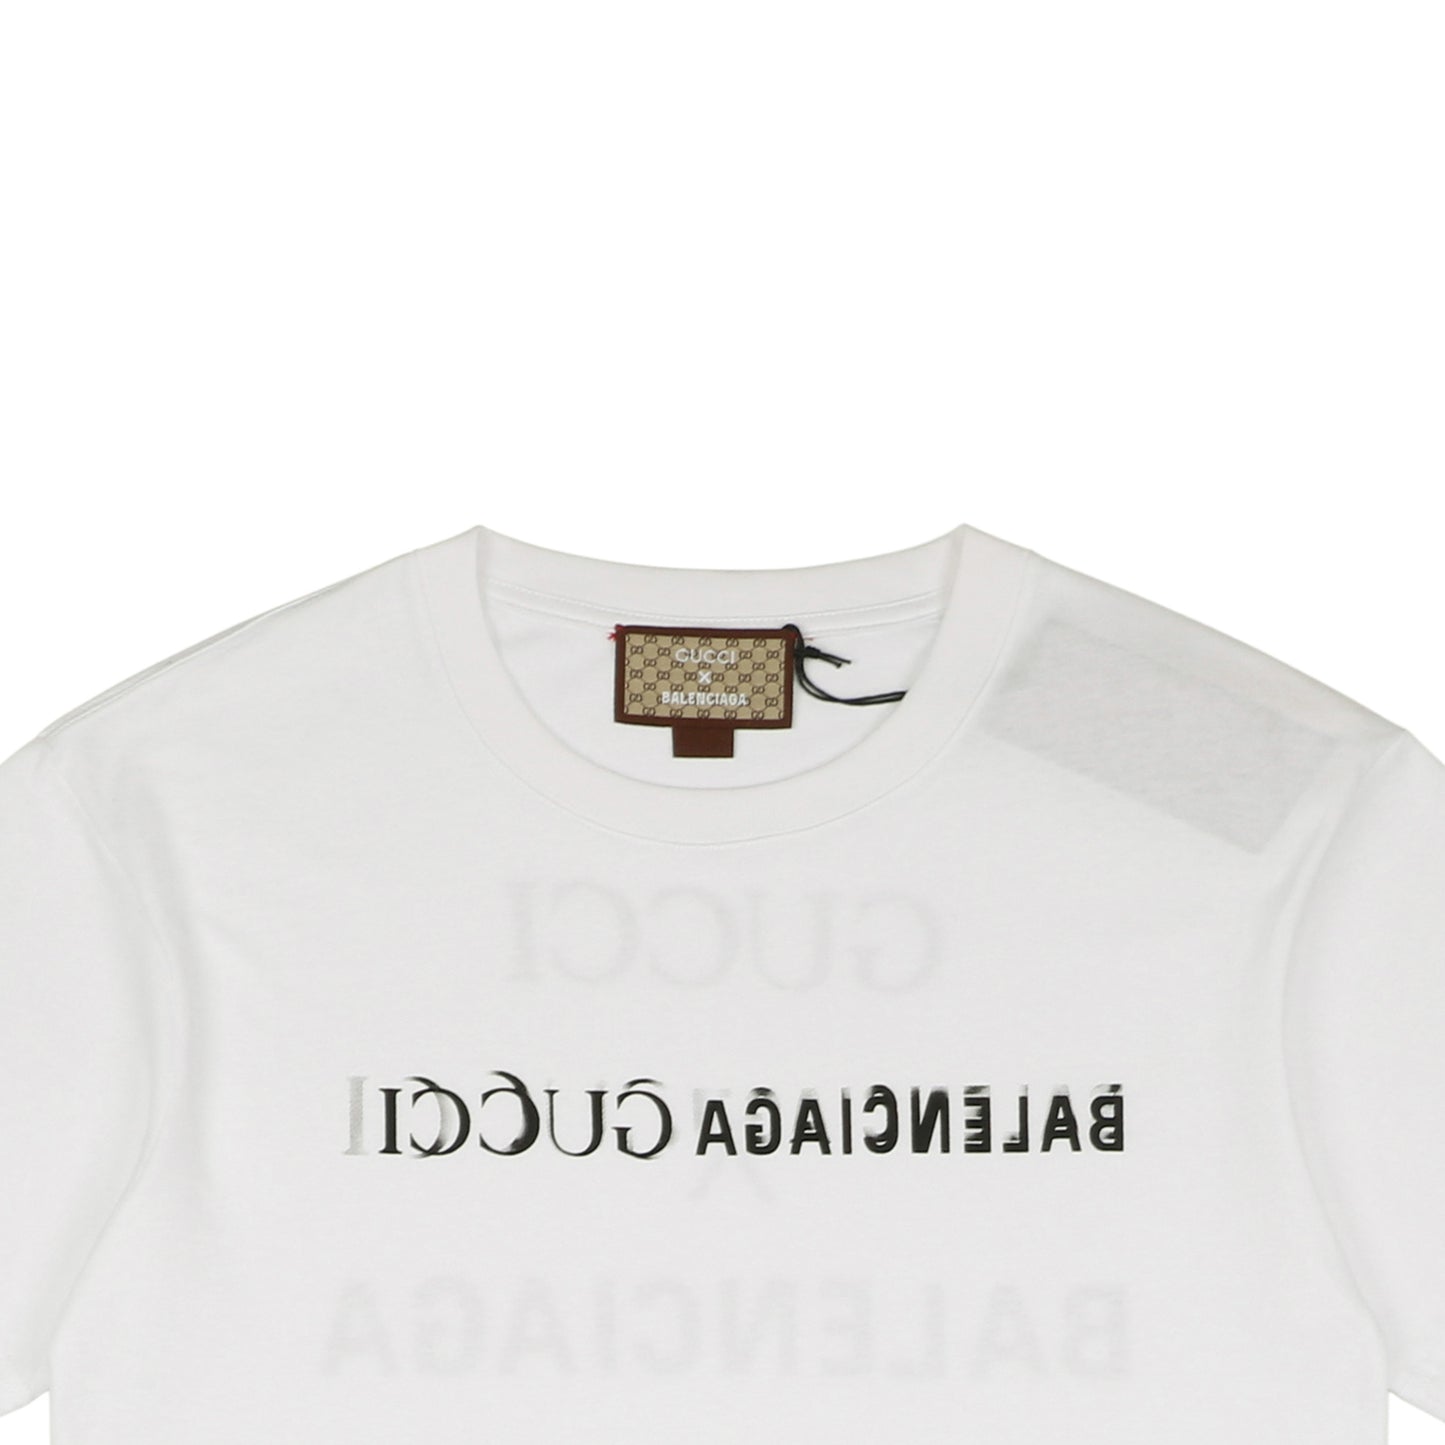 Gucc1 X Balenci White T-Shirt